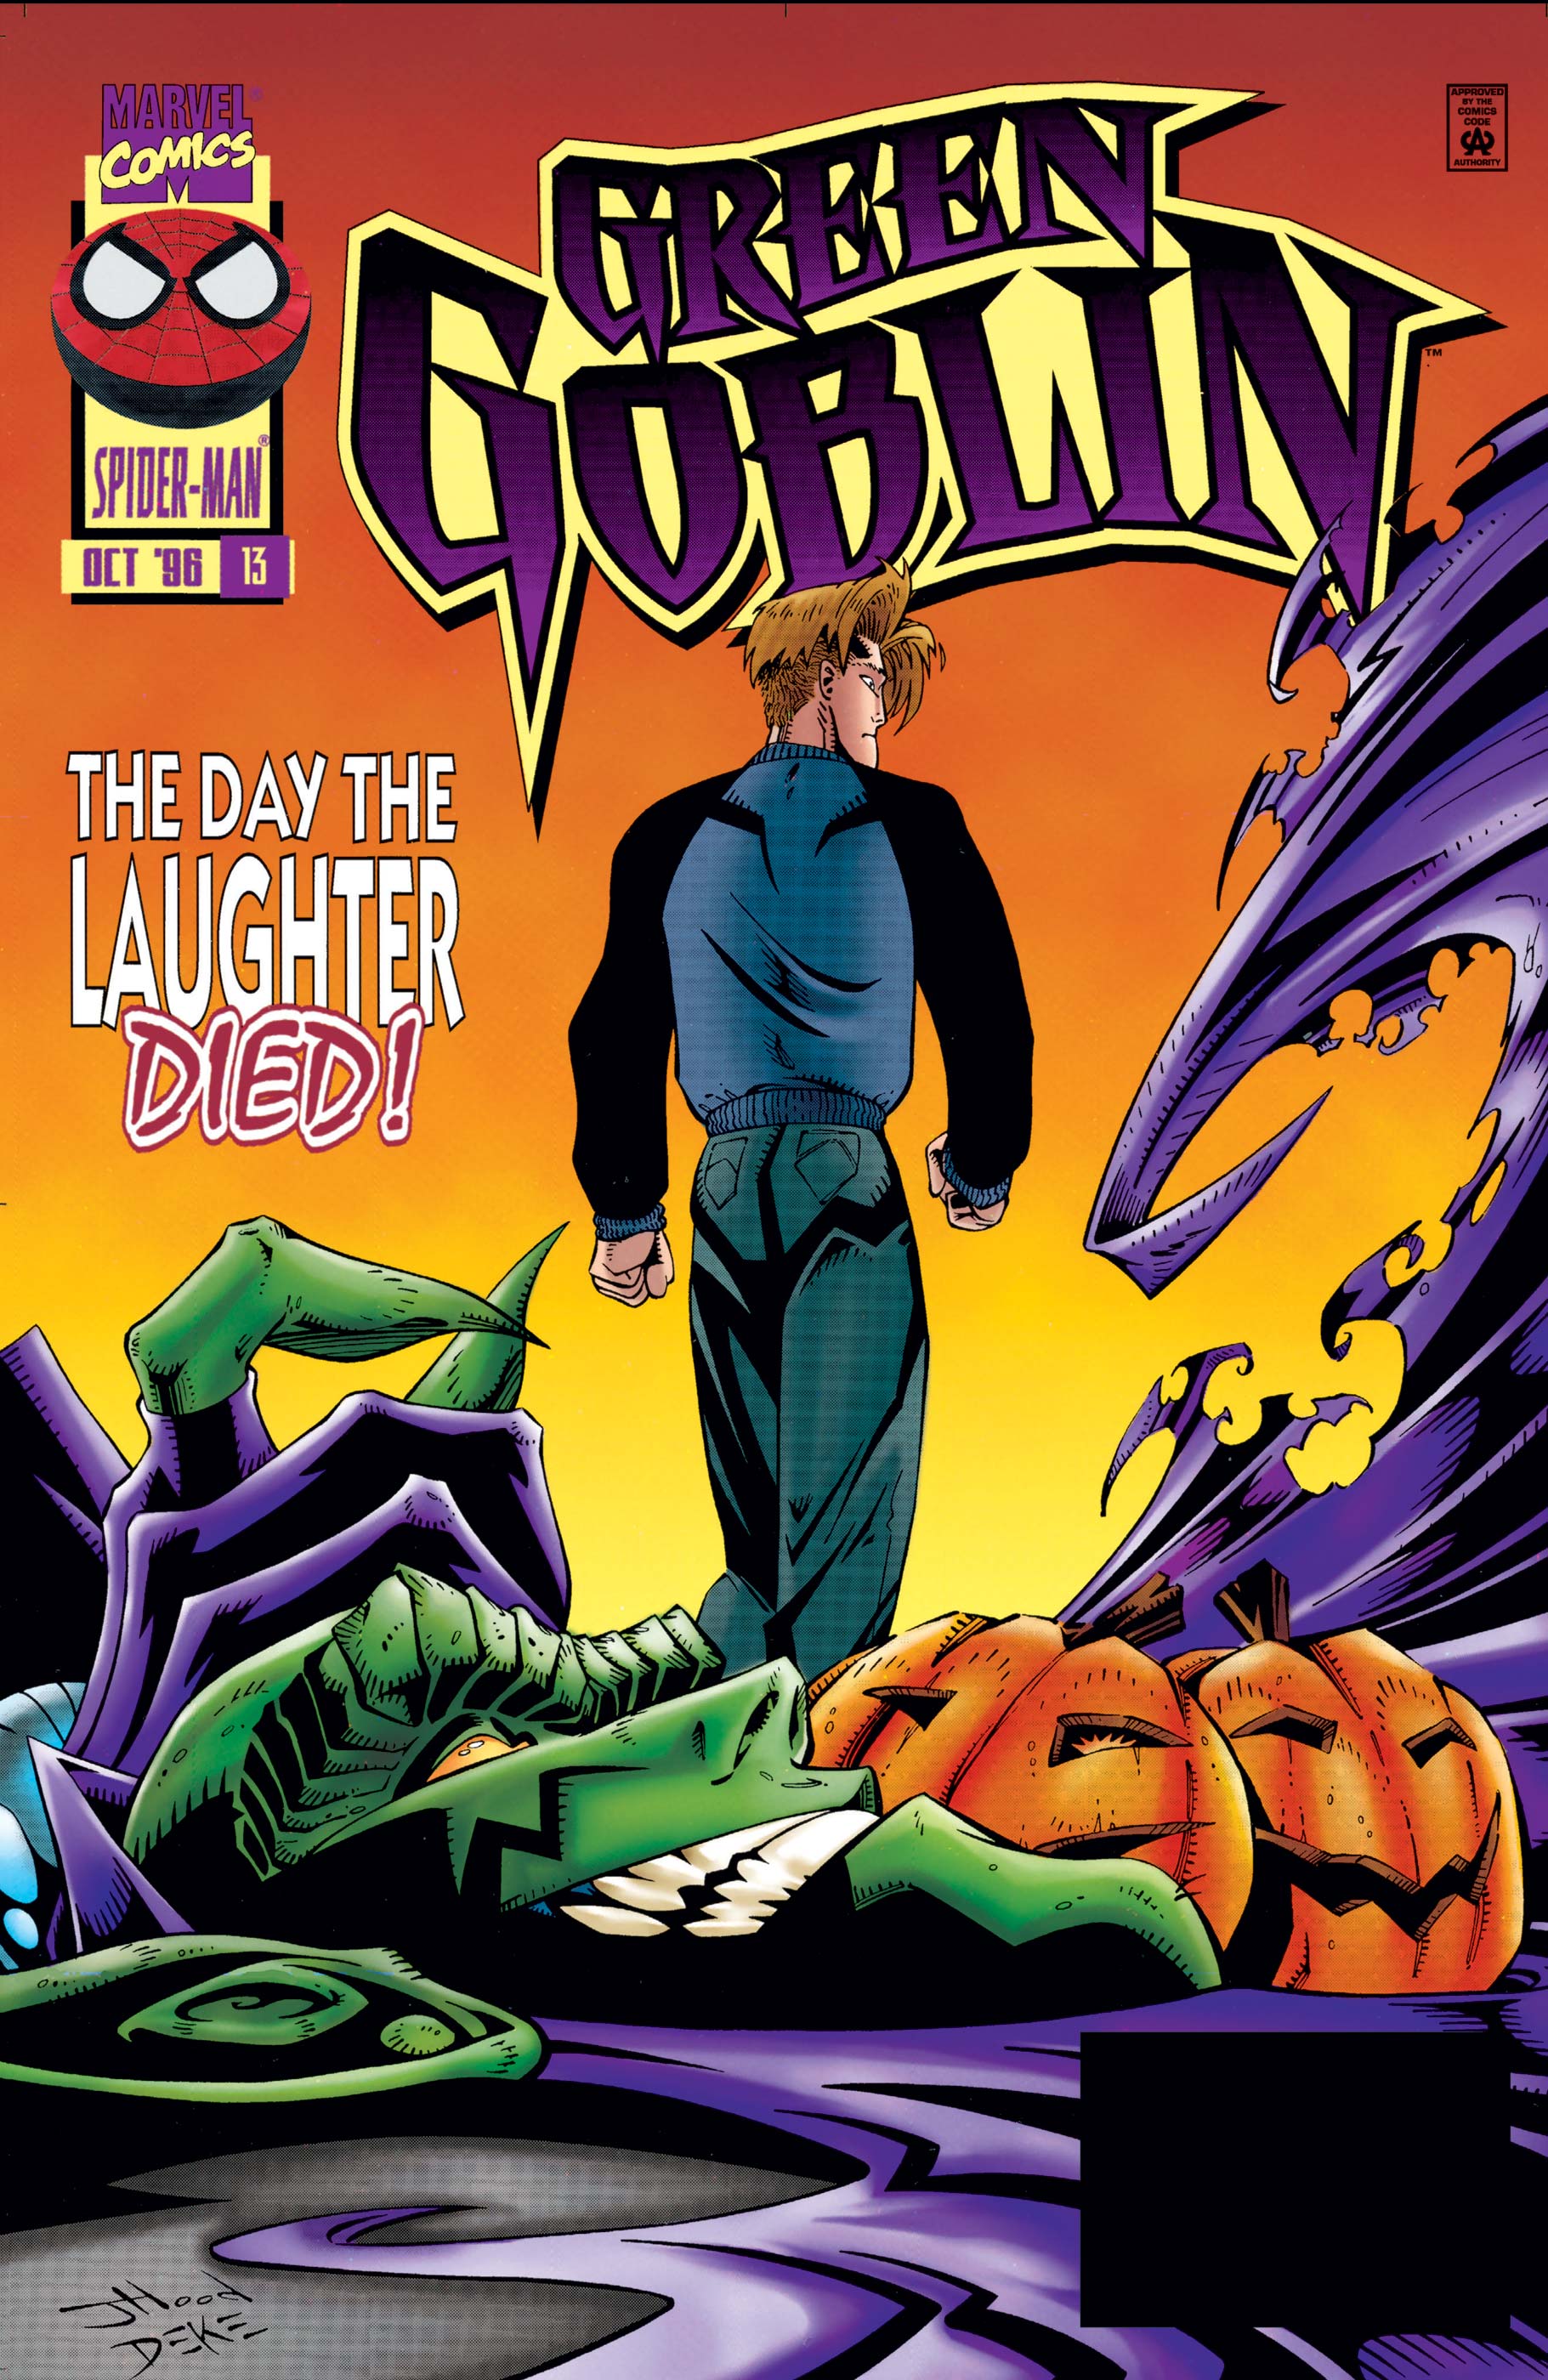 Green Goblin (1995) #13